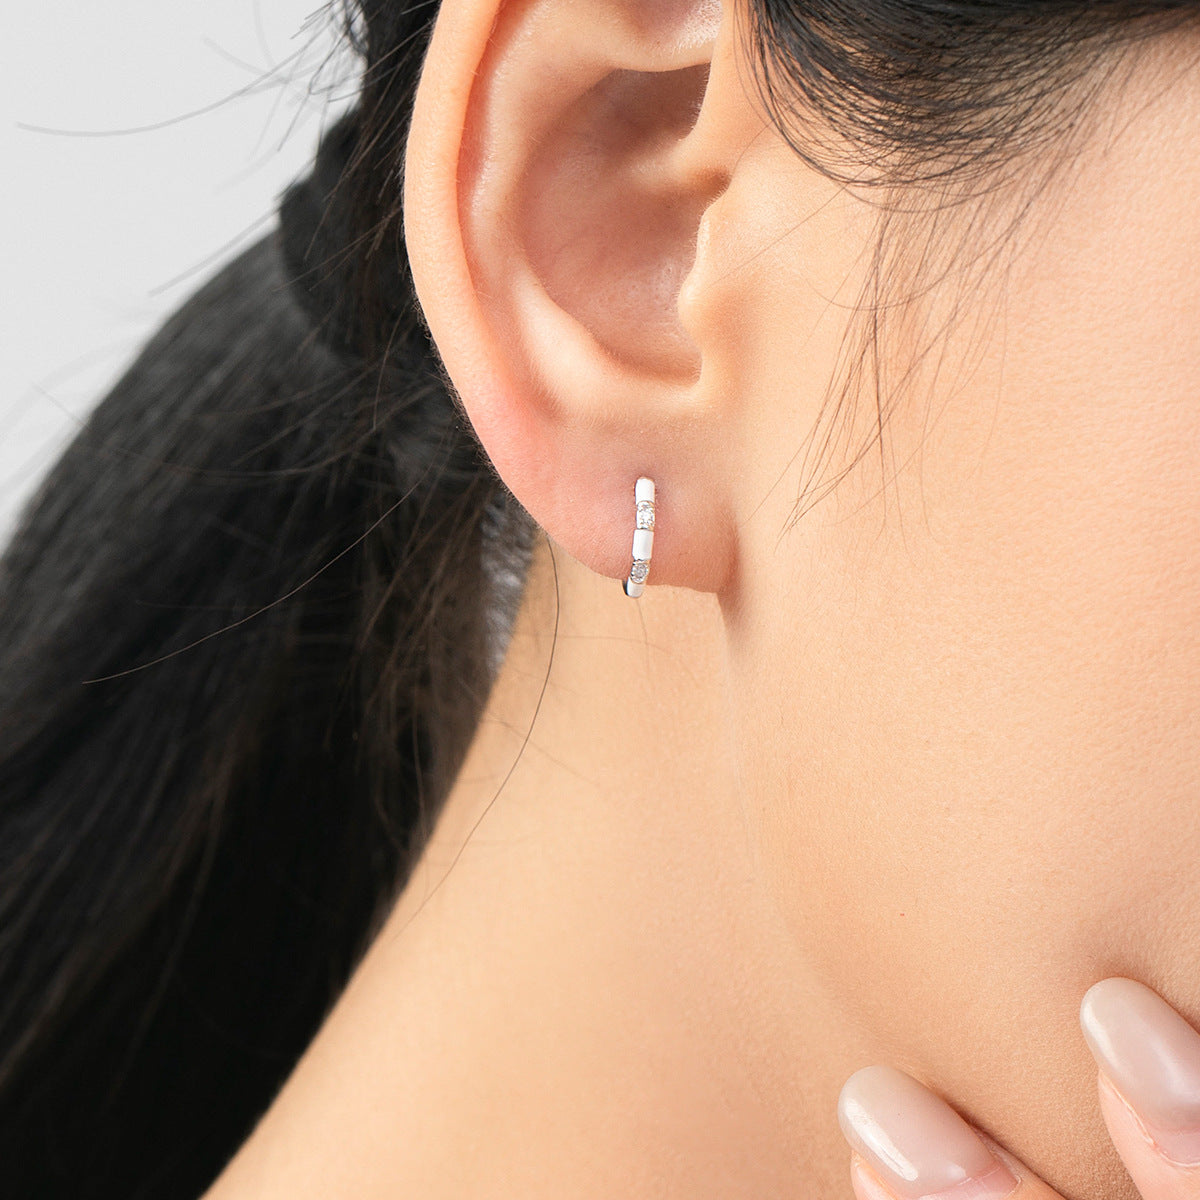 Stylish Sterling Silver Zircon Drop Earrings for Women